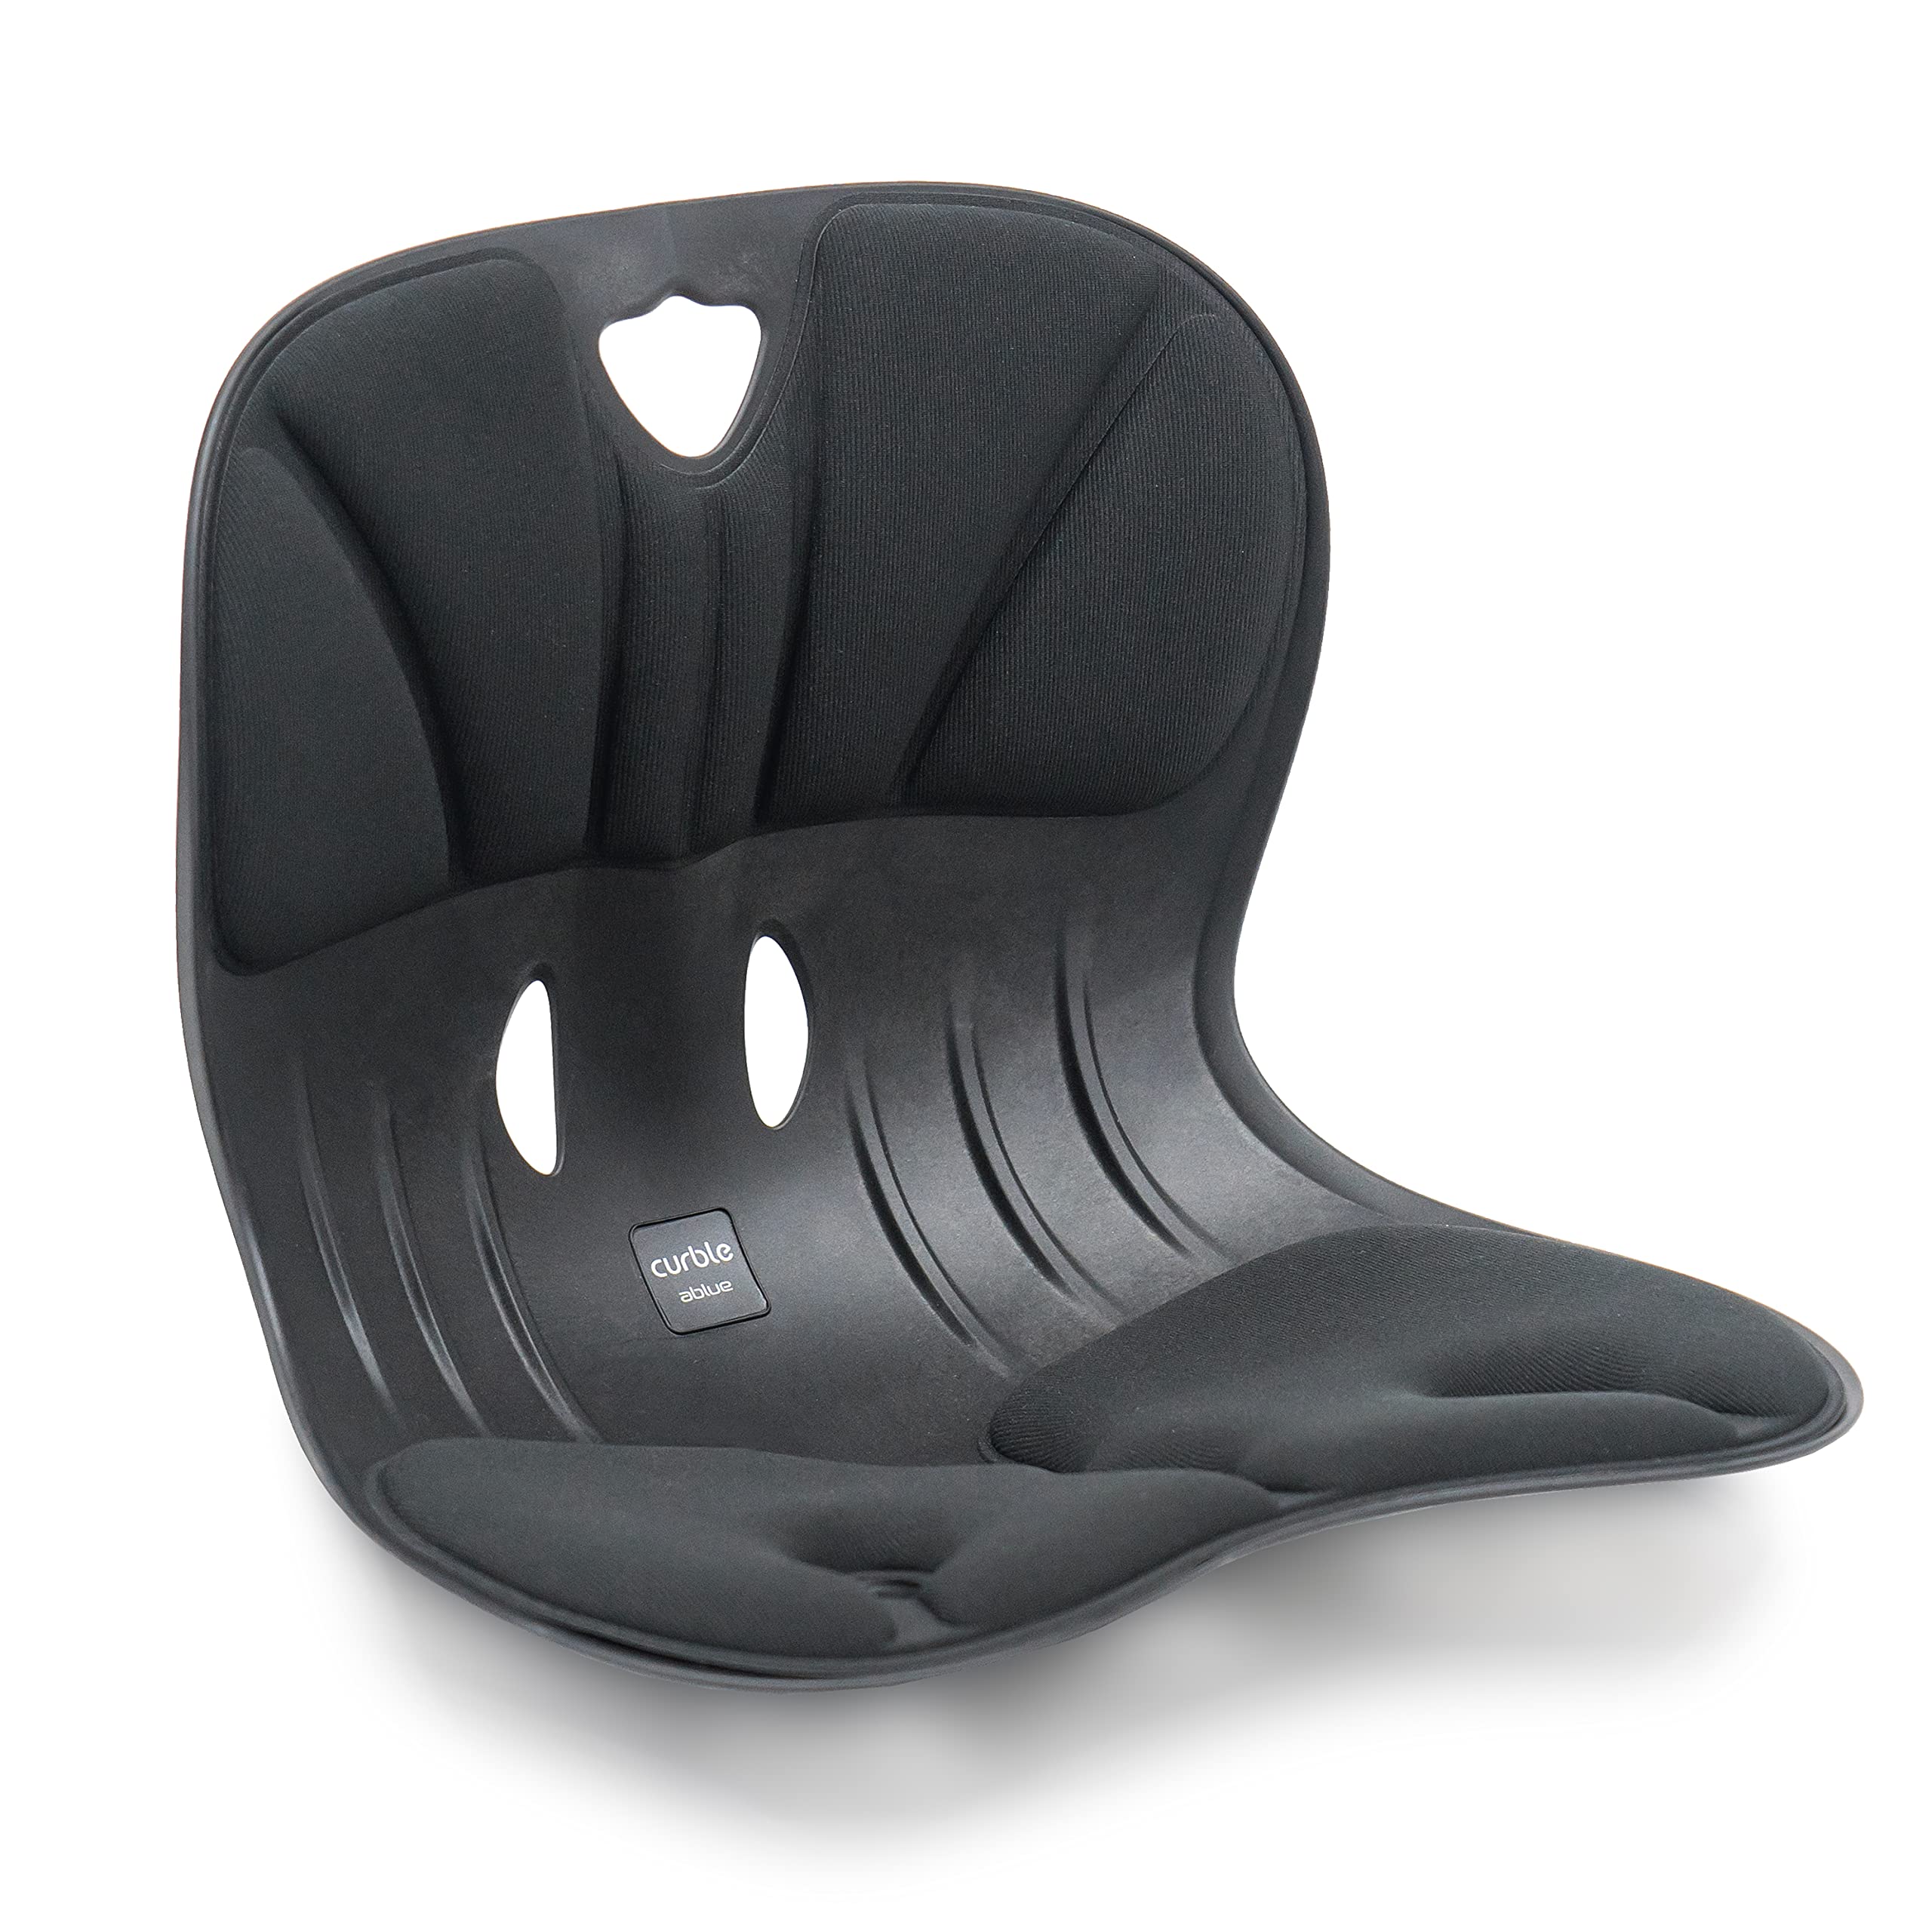 Seduta ergonomica CURBLE WIDER - nero - Titanium